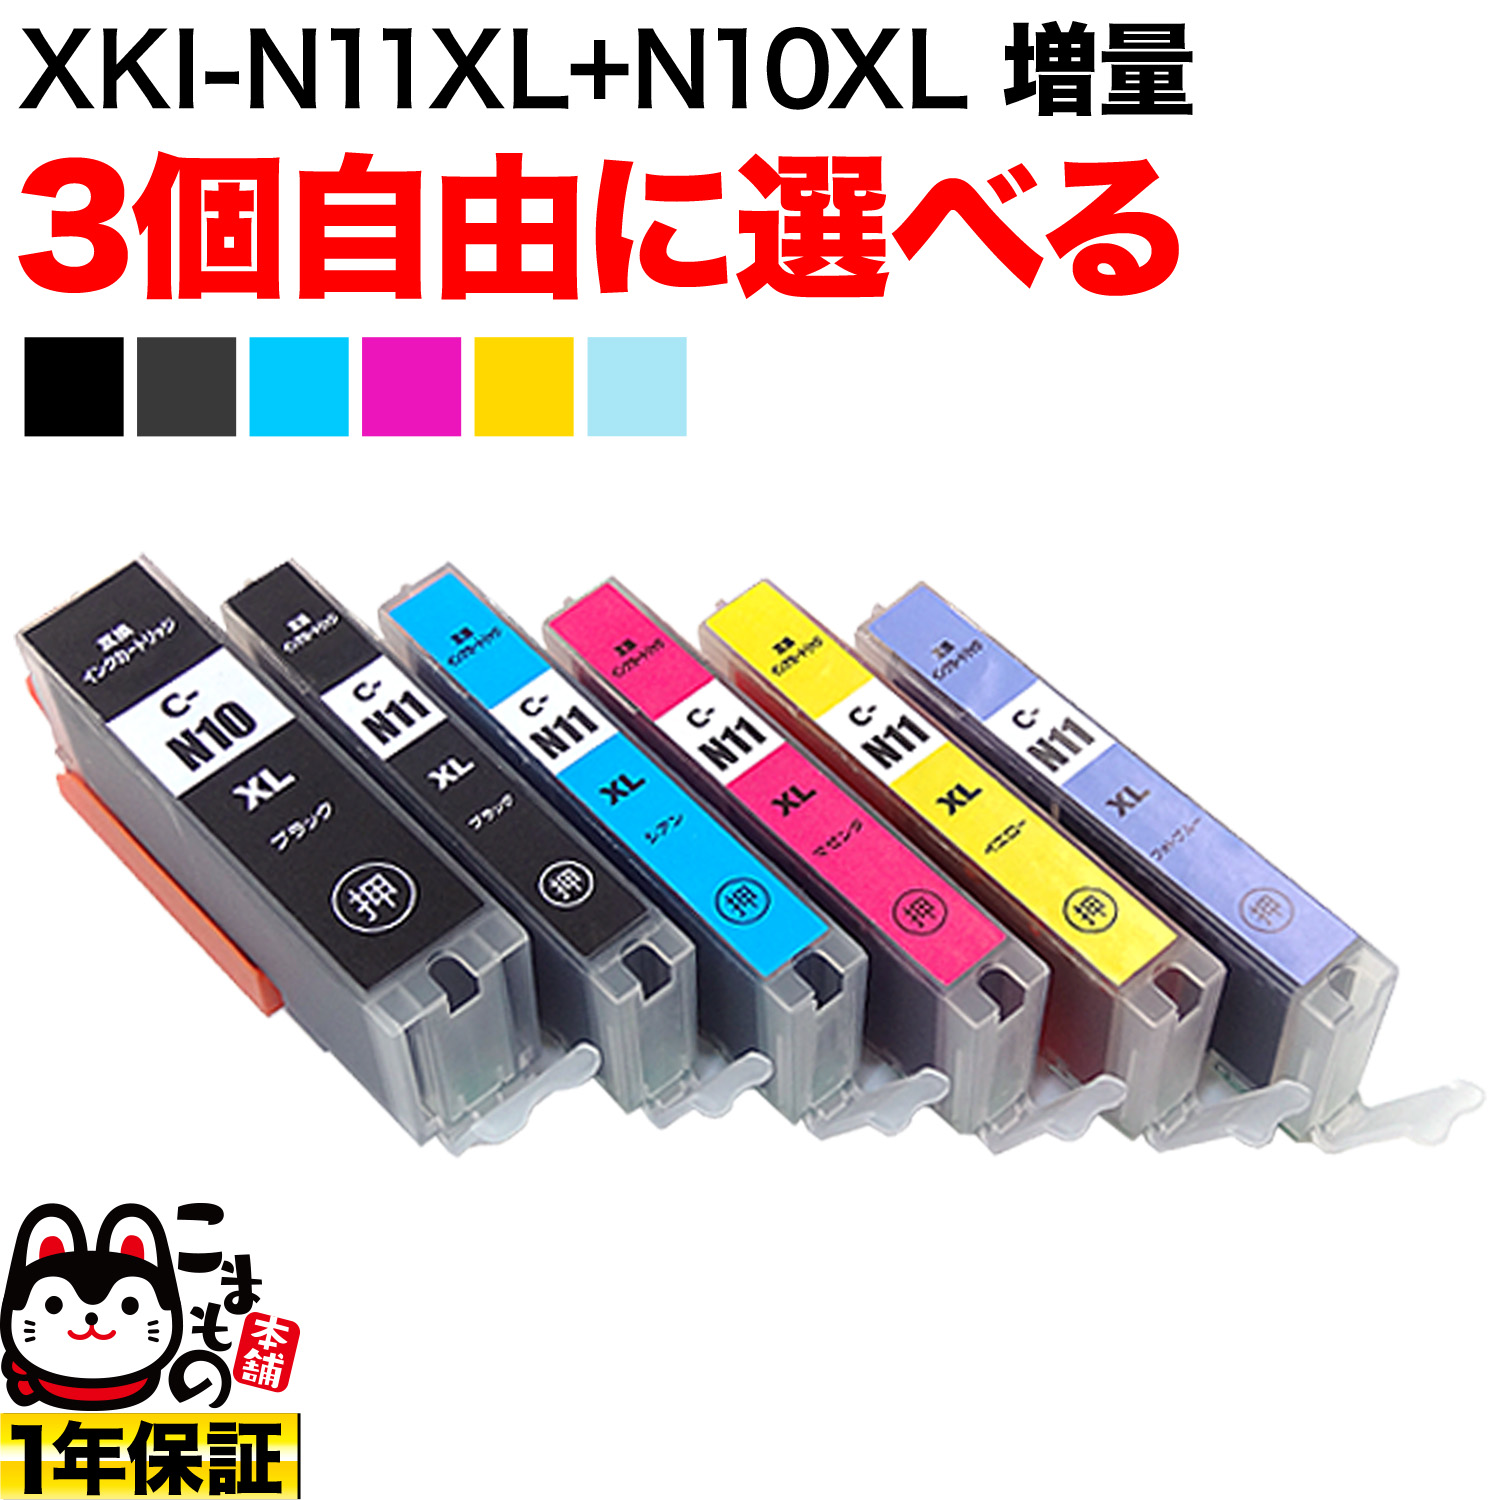 キヤノン用 XKI-N11XL+N10XL互換インクカートリッジ 自由選択3個セット